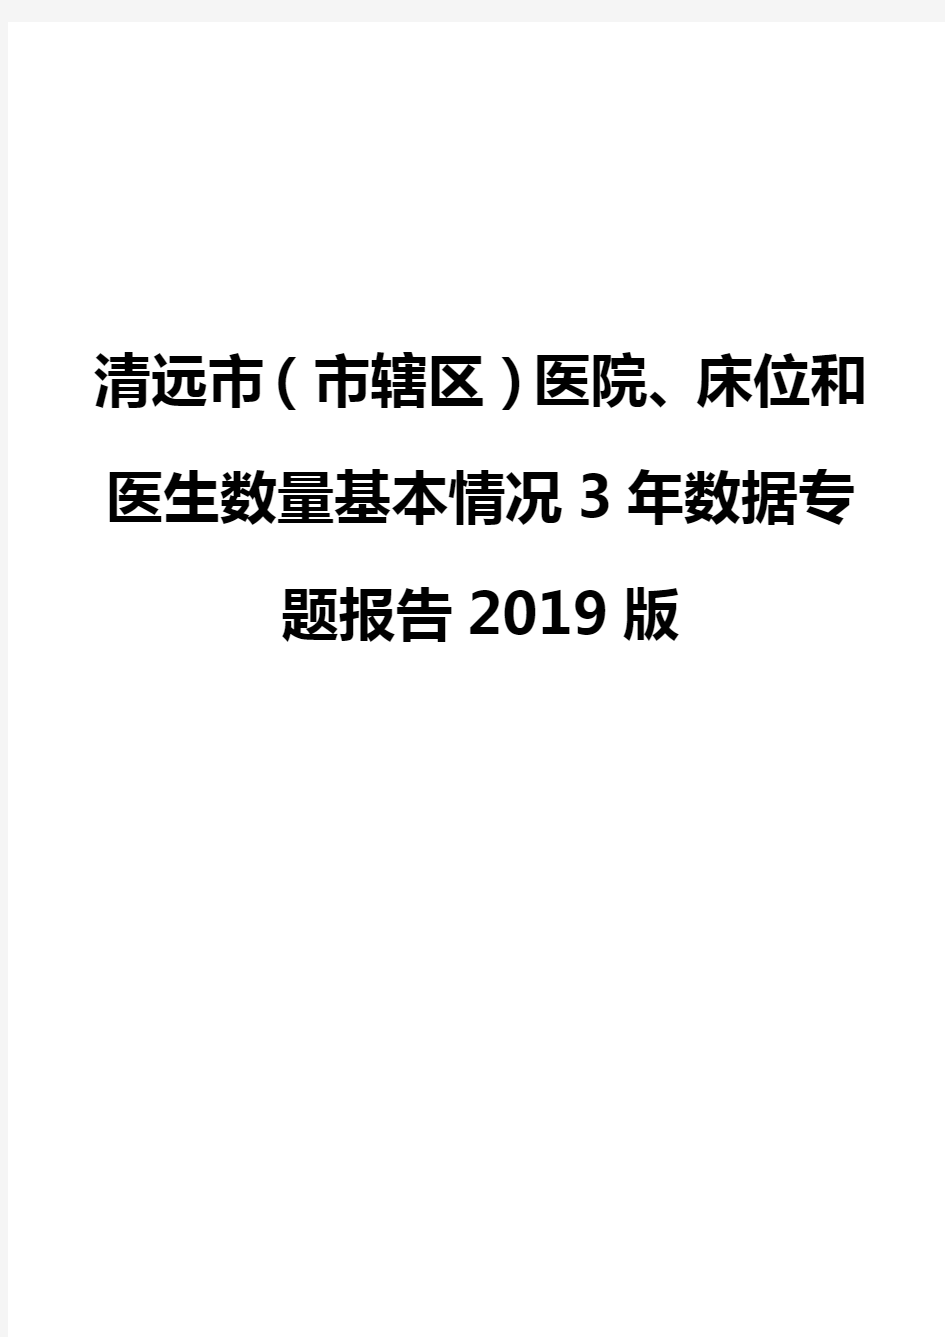 清远市(市辖区)医院、床位和医生数量基本情况3年数据专题报告2019版